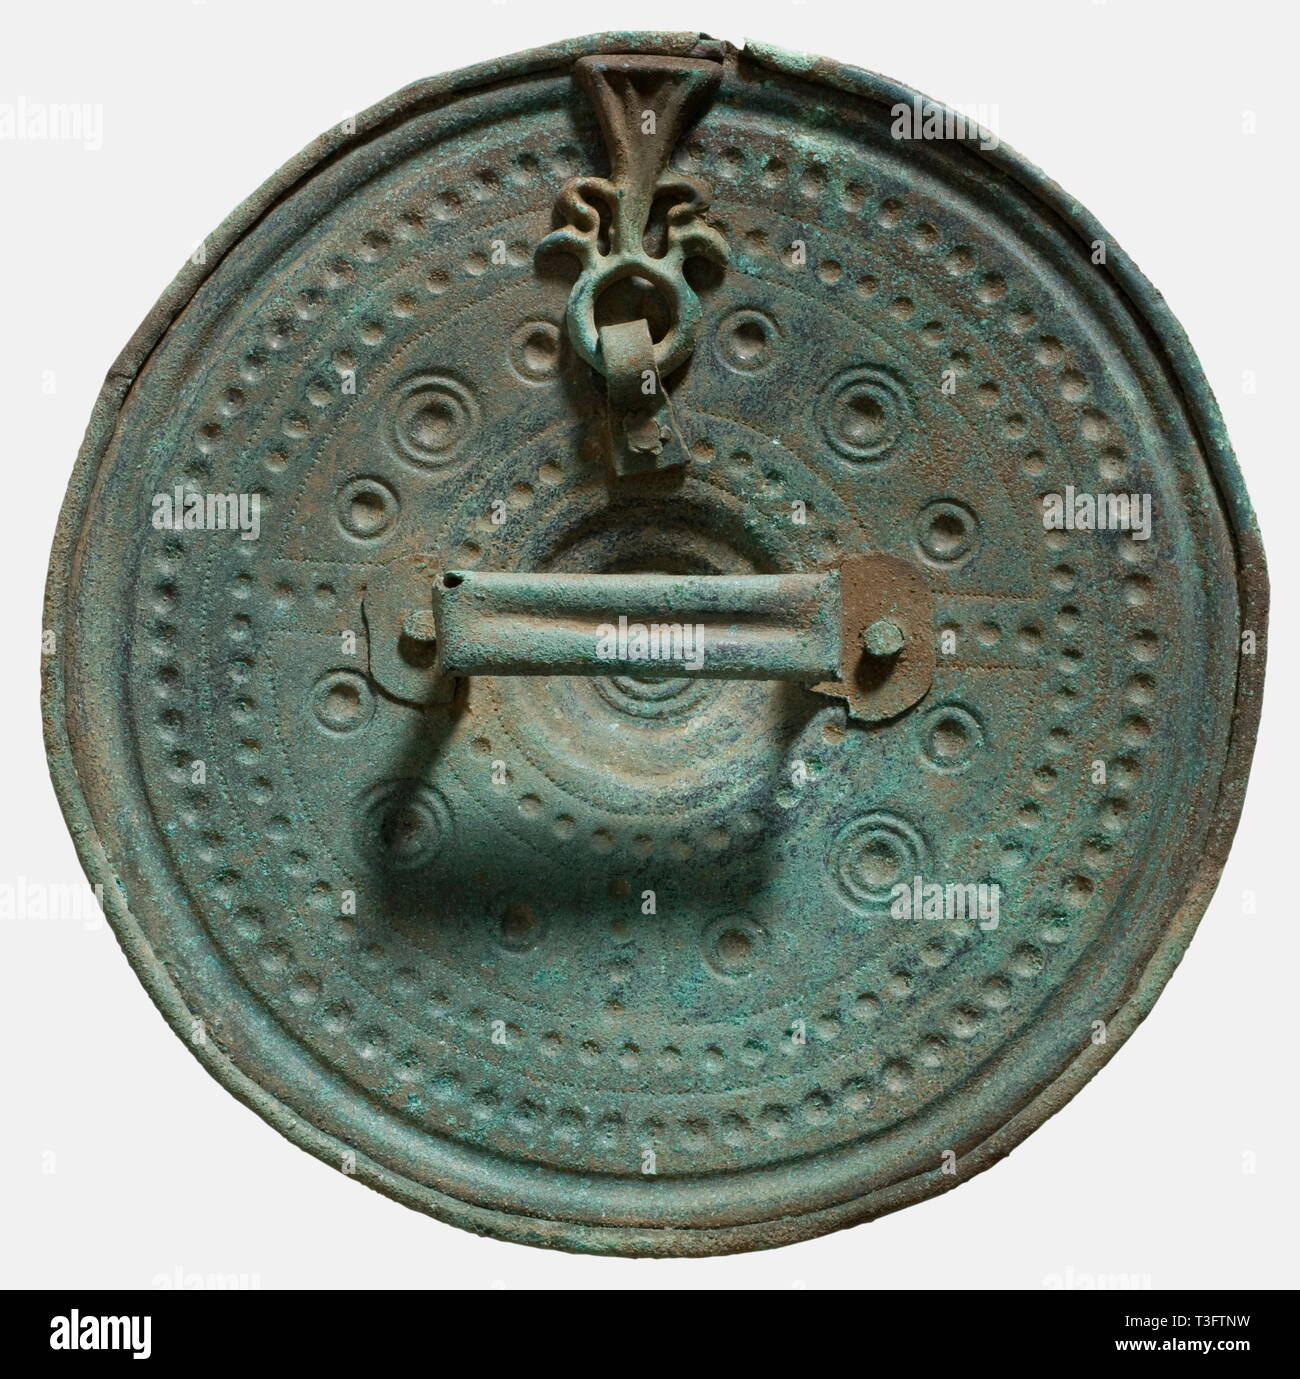 Einen silbernen Schild, Villanova, 8., 9. und 7. Jahrhundert v. Chr. Bronze. Schirmblech dekoriert mit konzentrischen Kreisen von boss Ornamente und embossments, die Kreise in der Nähe des Zentrums in vier Abschnitte mit ornamentalen Streifen in einer Form angeordnet sind geteilt. An der Innenseite einer genieteten bronze Strap Griff (Länge 6 cm) sowie ein Ring mit Amulett (Länge 5 cm) in Form von eine stilisierte menschliche Figur. Durchmesser 19 cm. Blau-grün zu grün-schwarze Patina. Sammlung Axel Guttmann (Inv. Nr. R 101) in Paris im Jahr 1994 erworben. Außerordentlich, gut erhaltene und Schöne, Additional-Rights - Clearance-Info - Not-Available Stockfoto